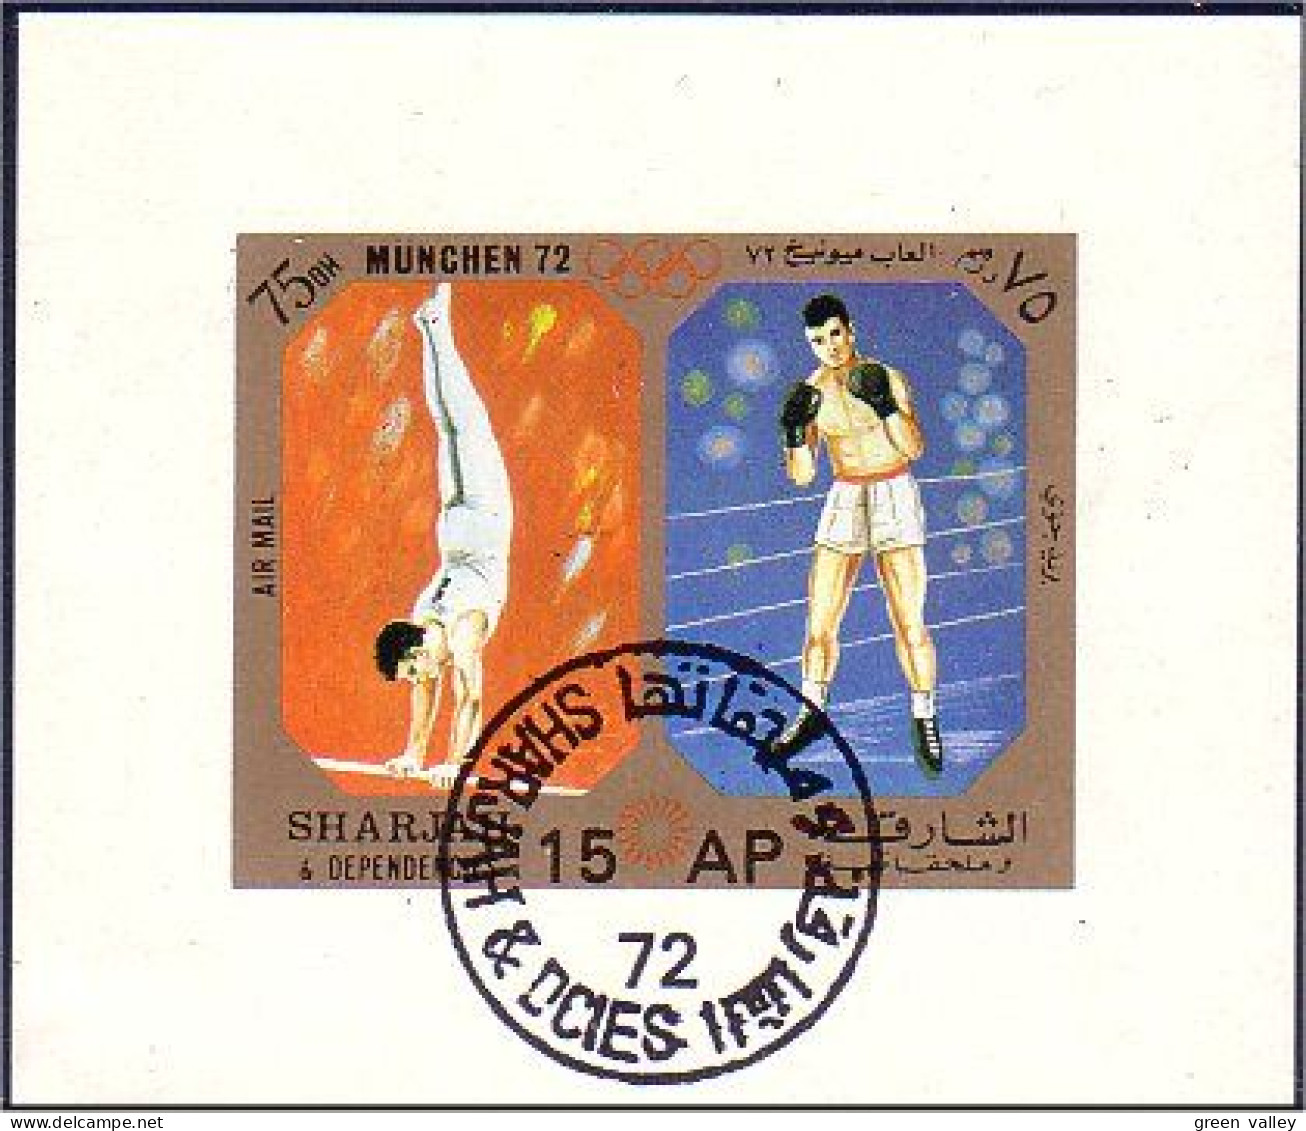 804 Sharjah Boxe Et Gymnastique Bloc Feuillet Souvenir Sheet (SHA-2) - Pugilato